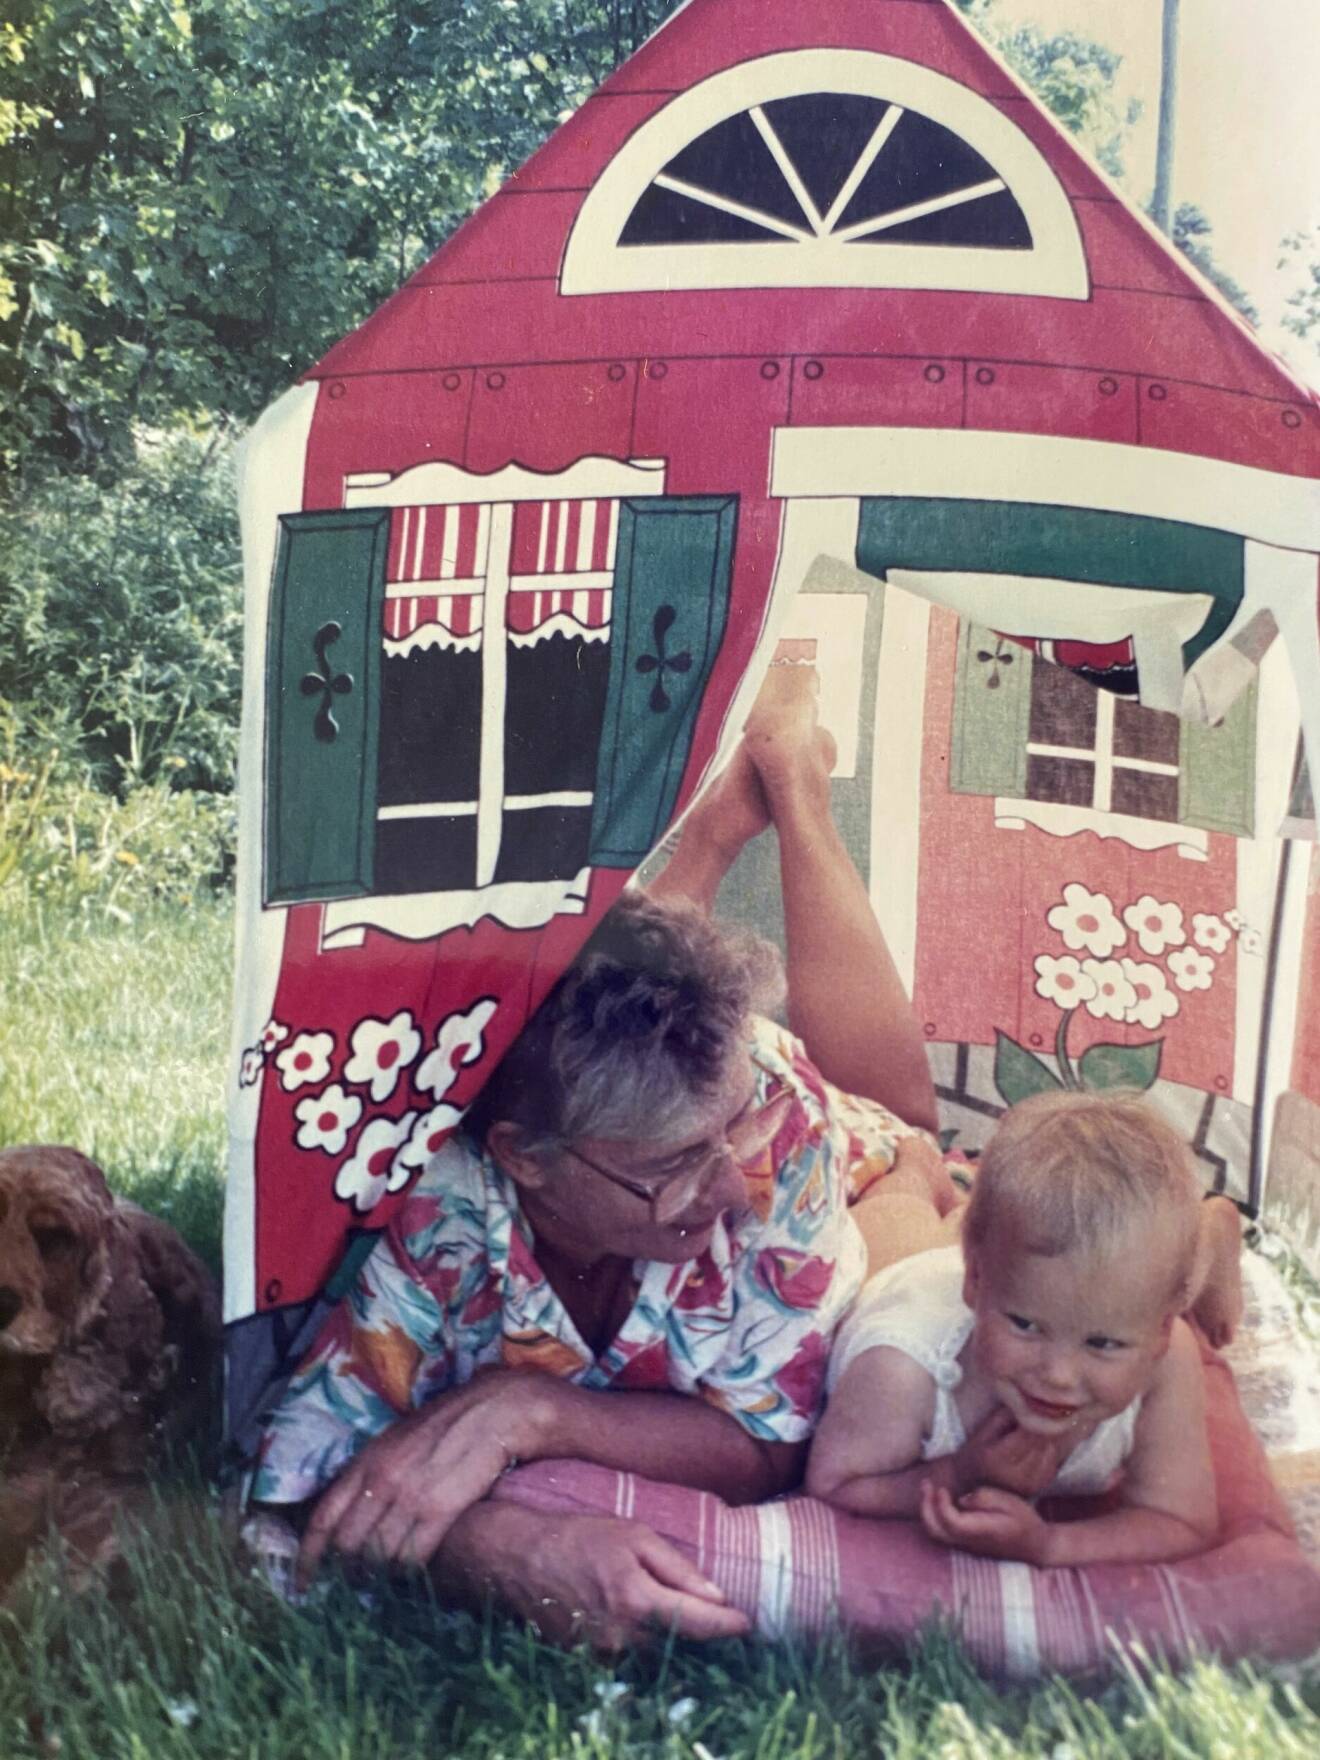 Skådespelaren Amanda Jansson som barn med sin mormor Barbro i ett leksakstält på en gräsmatta.